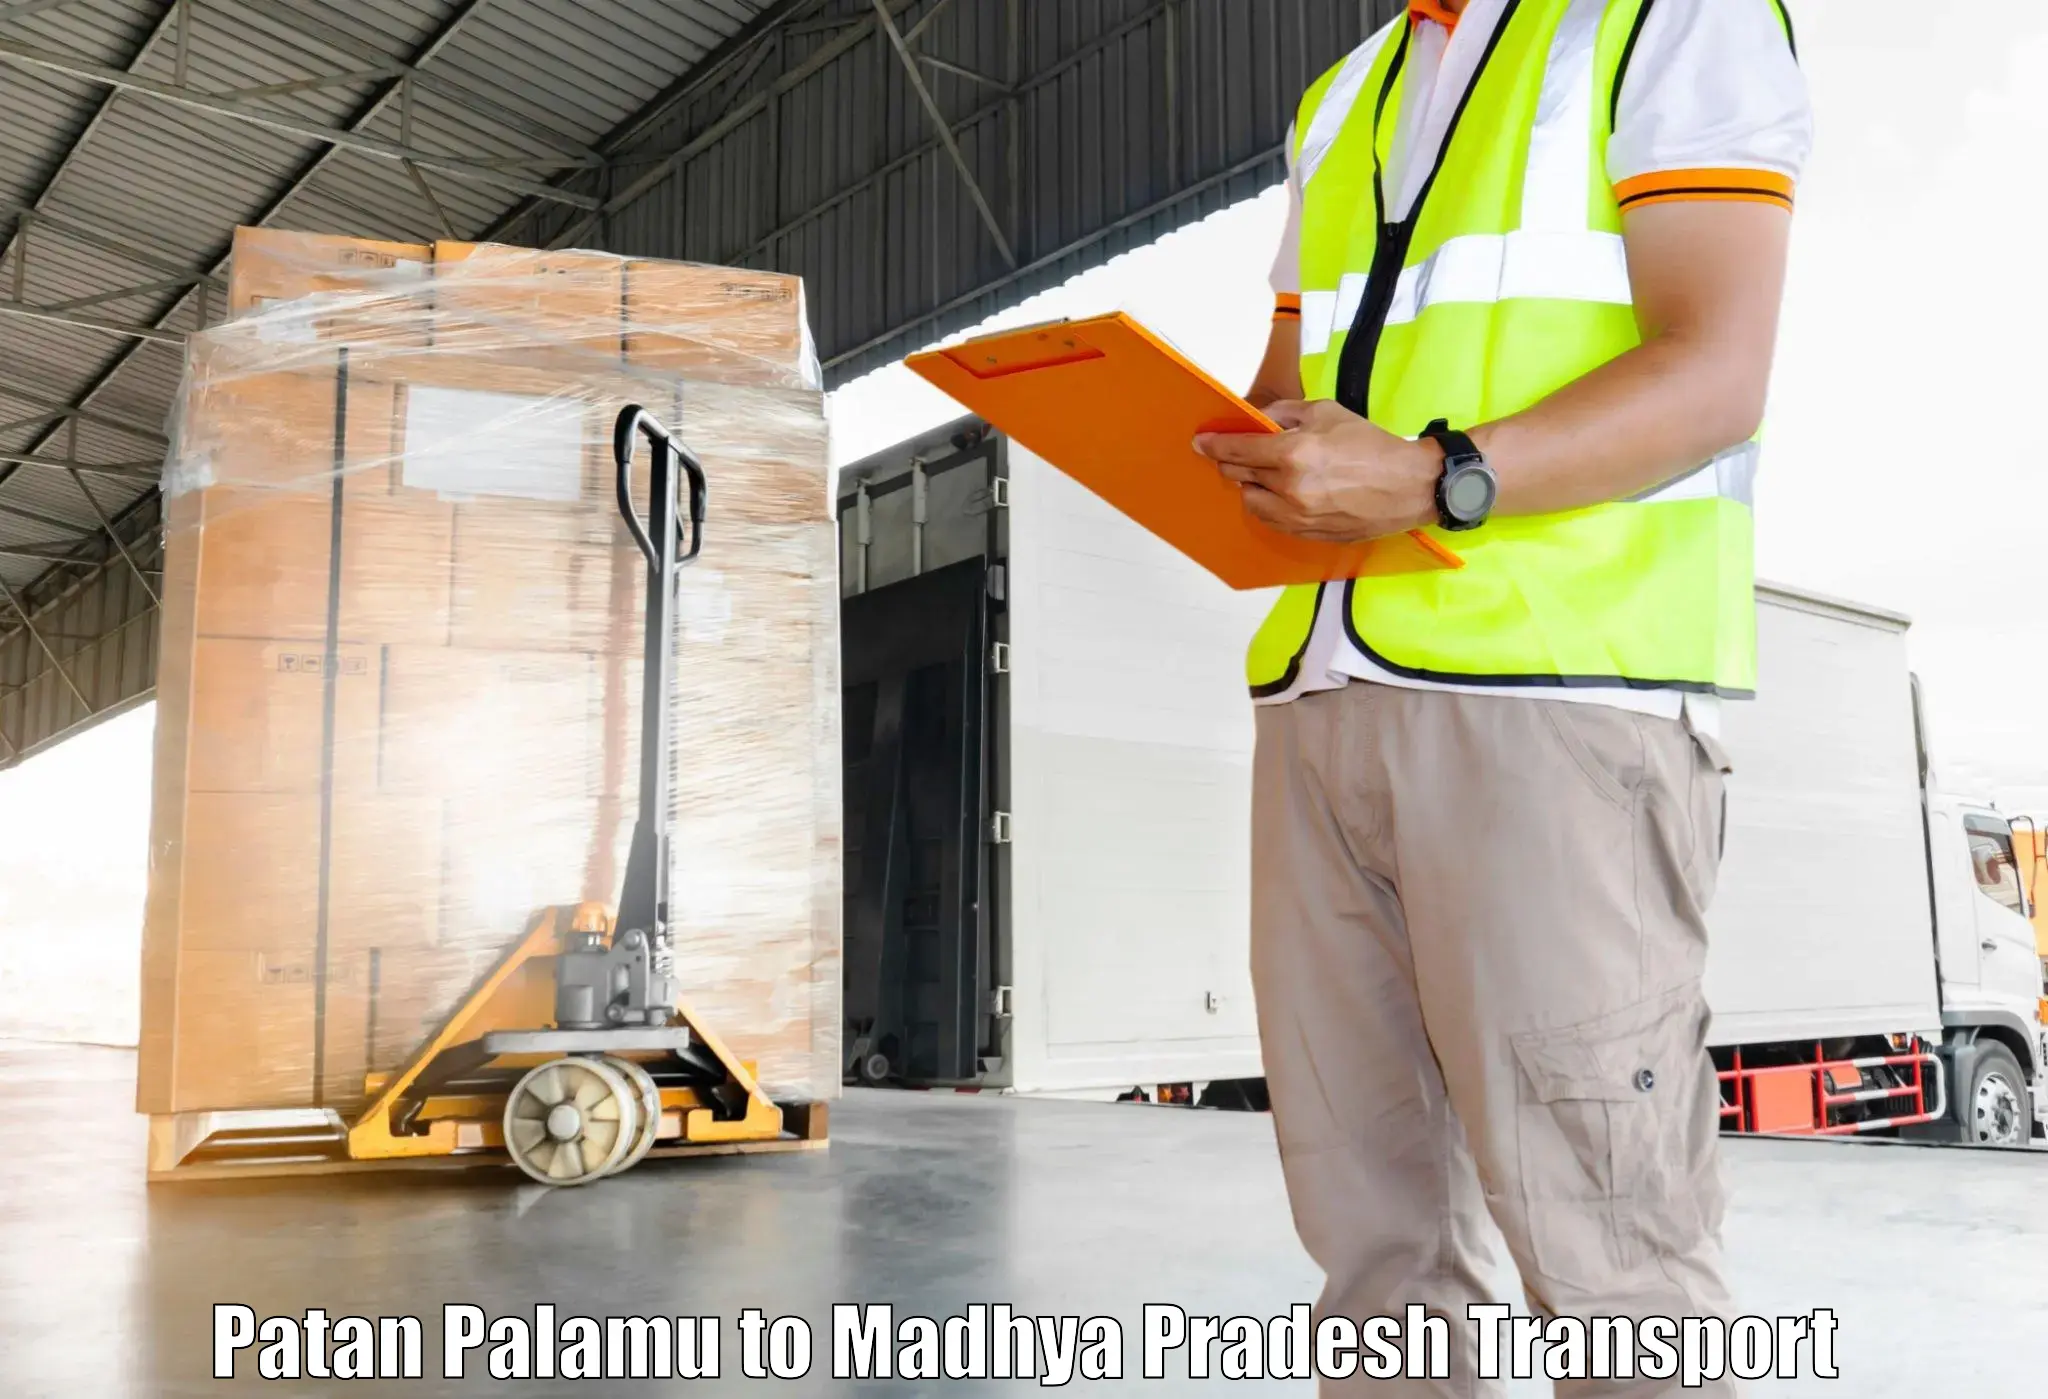 Air freight transport services Patan Palamu to Chhindwara